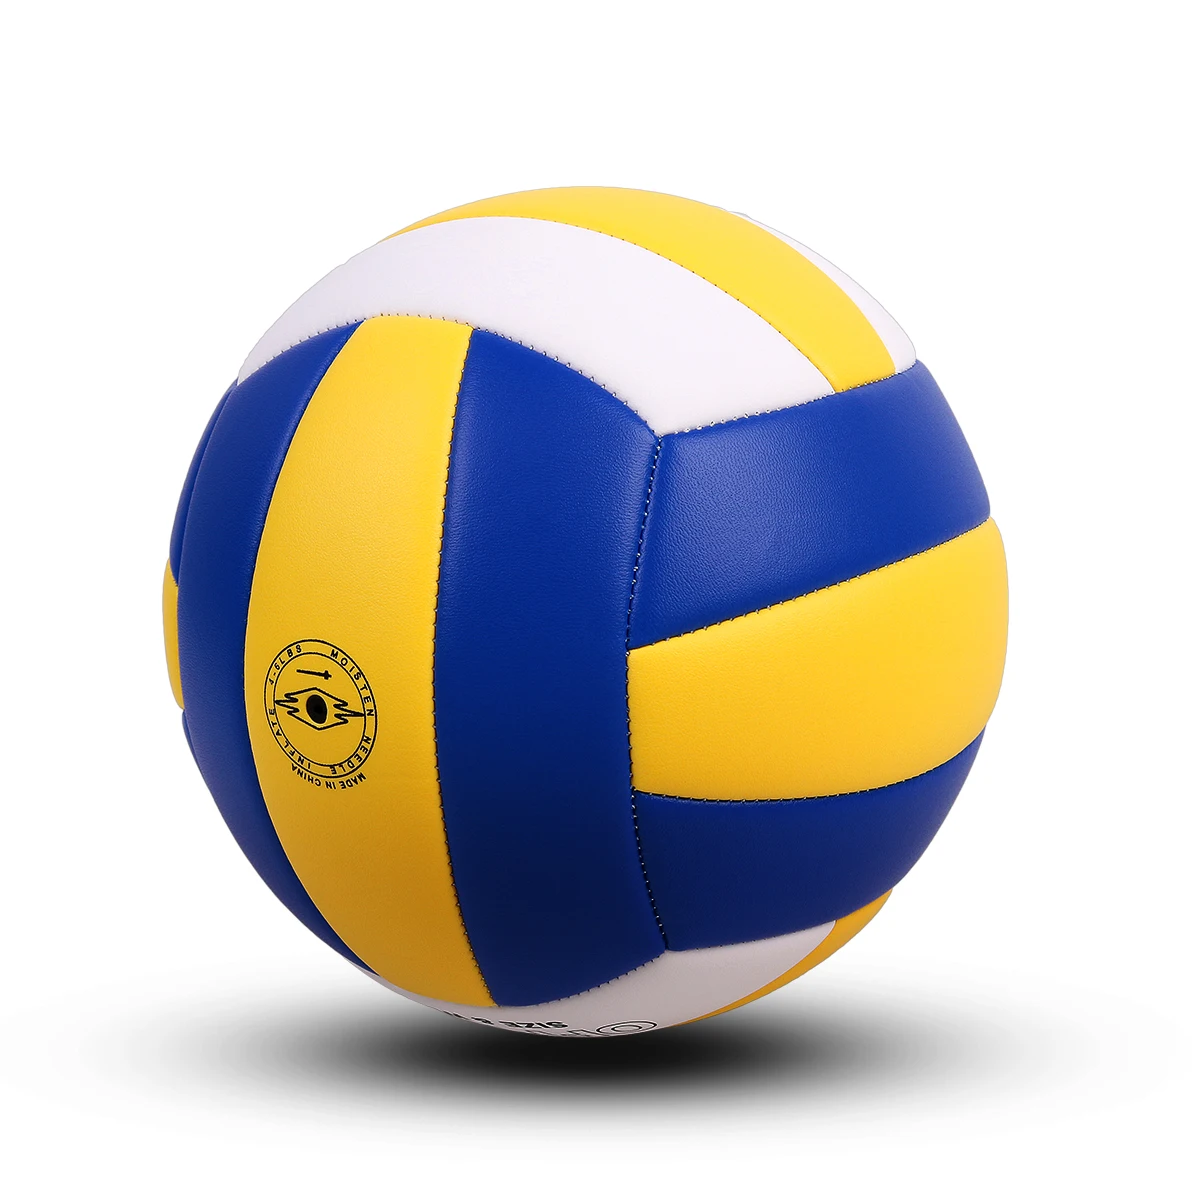 YANYODO официальный размер 5 волейбол, Мягкий Крытый открытый волейбол для игры тренажерный зал обучение пляж играть, желтый белый синий